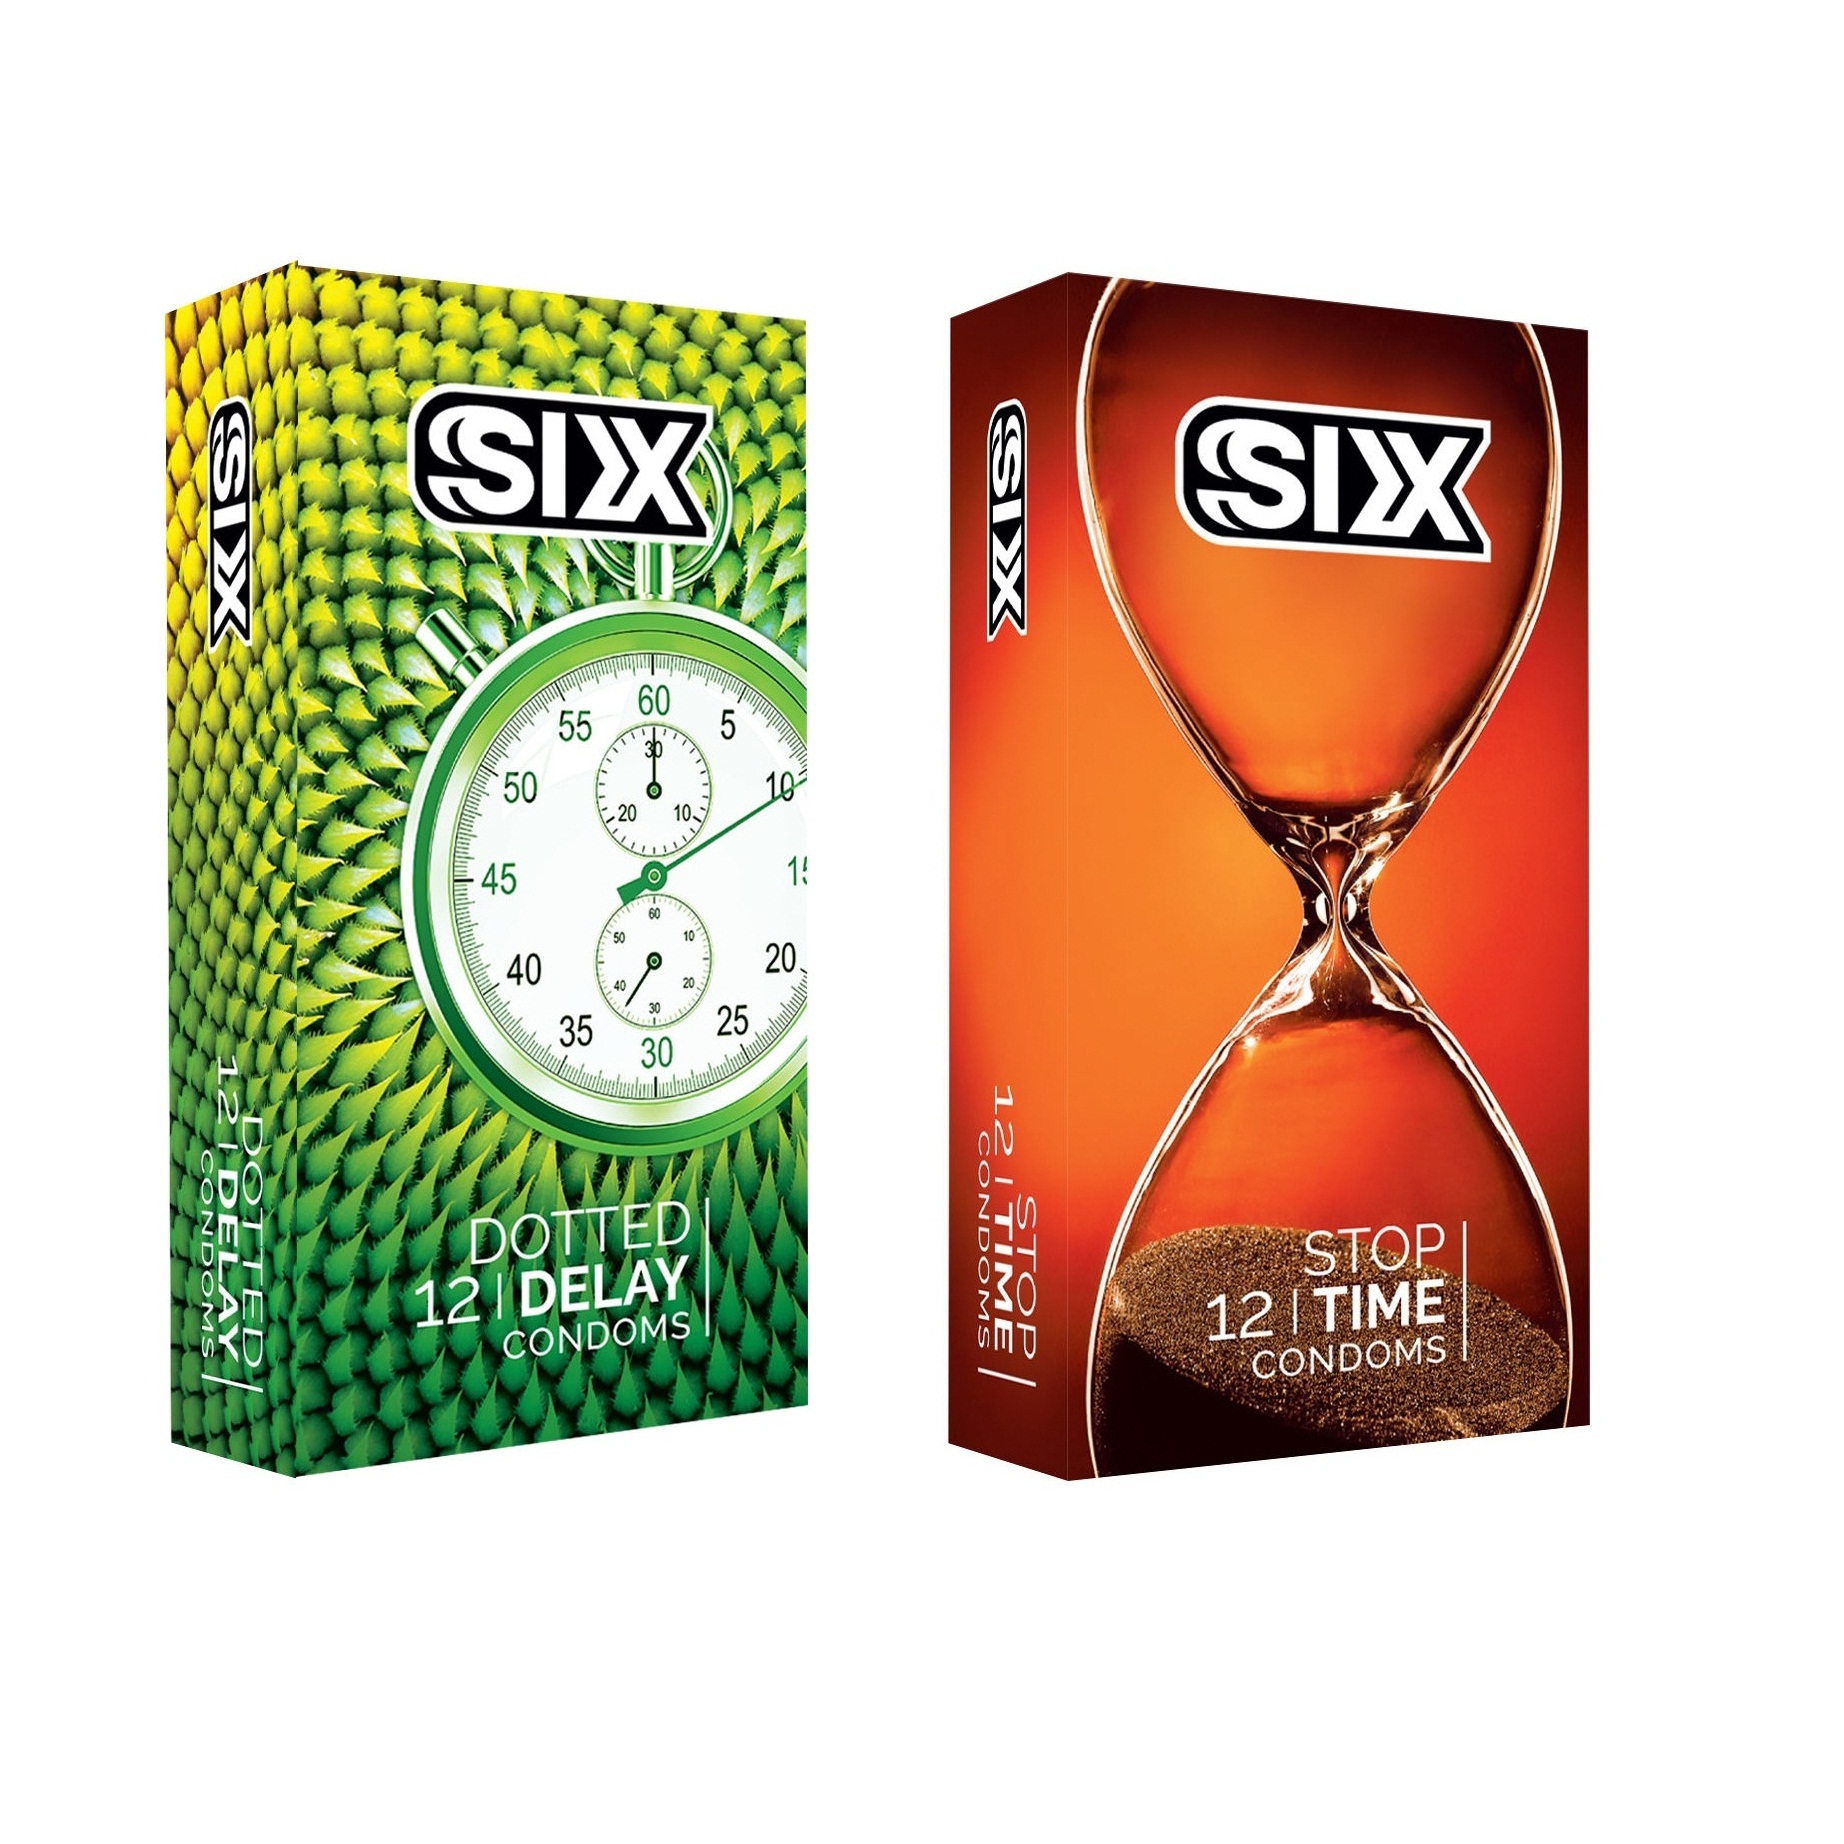 کاندوم سیکس مدل DottedDelay بسته 12 عددی به همراه کاندوم سیکس مدل Stop Time بسته 12 عددی